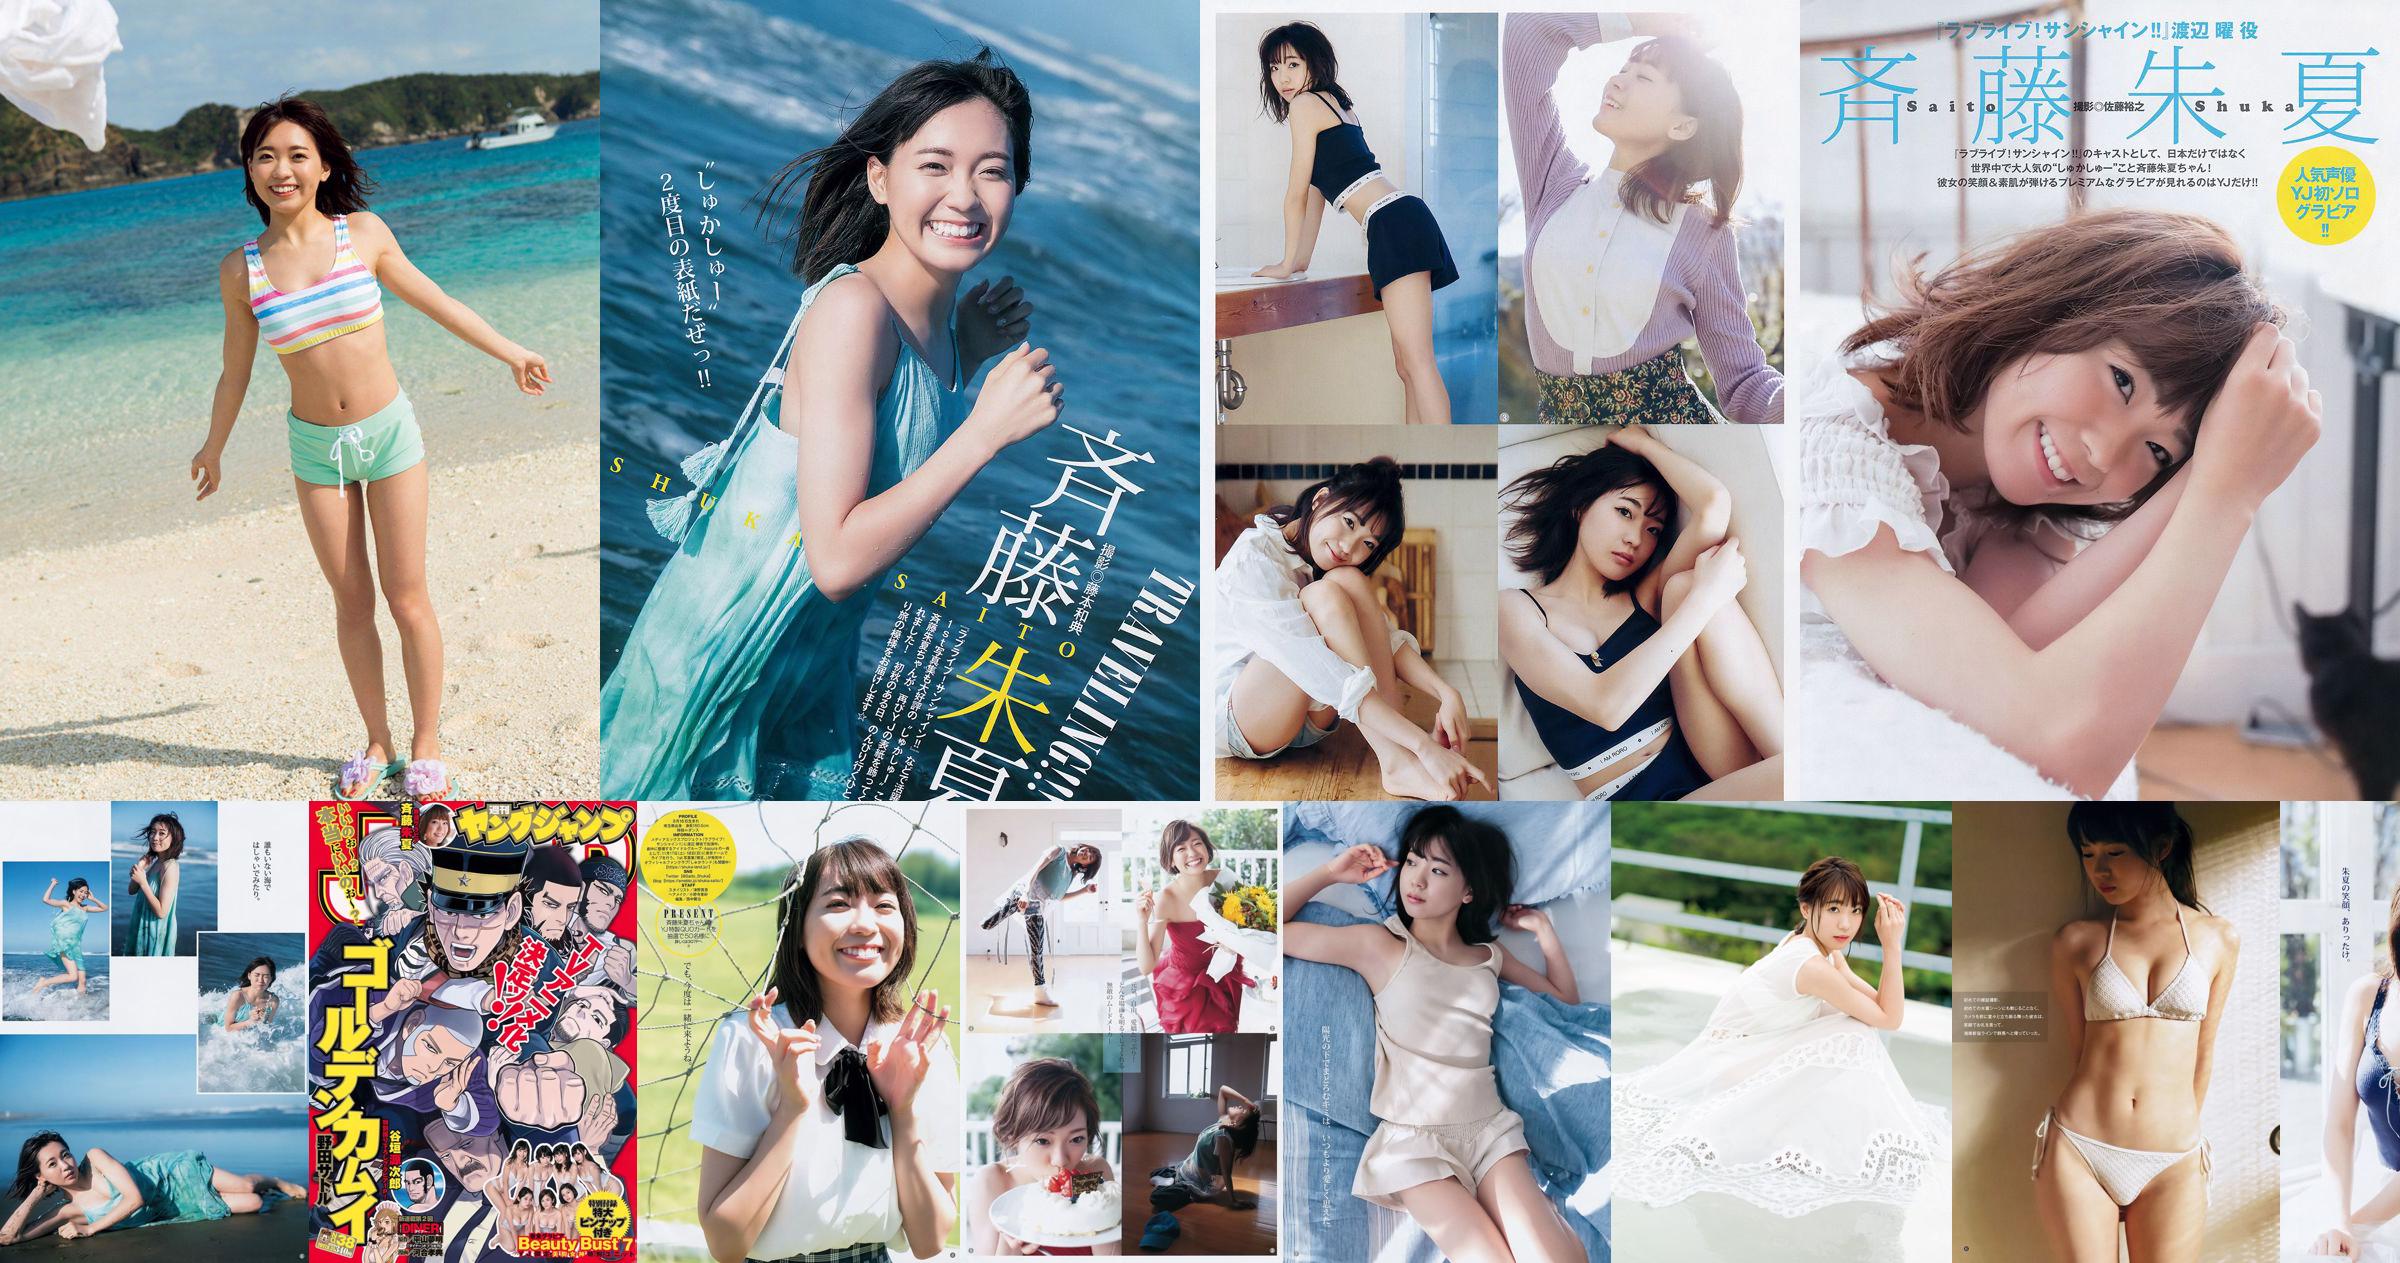 Shuka Saito Beauty Bust 7 [周刊Young Jump] 2017 No.38寫真 No.67db69 第3頁